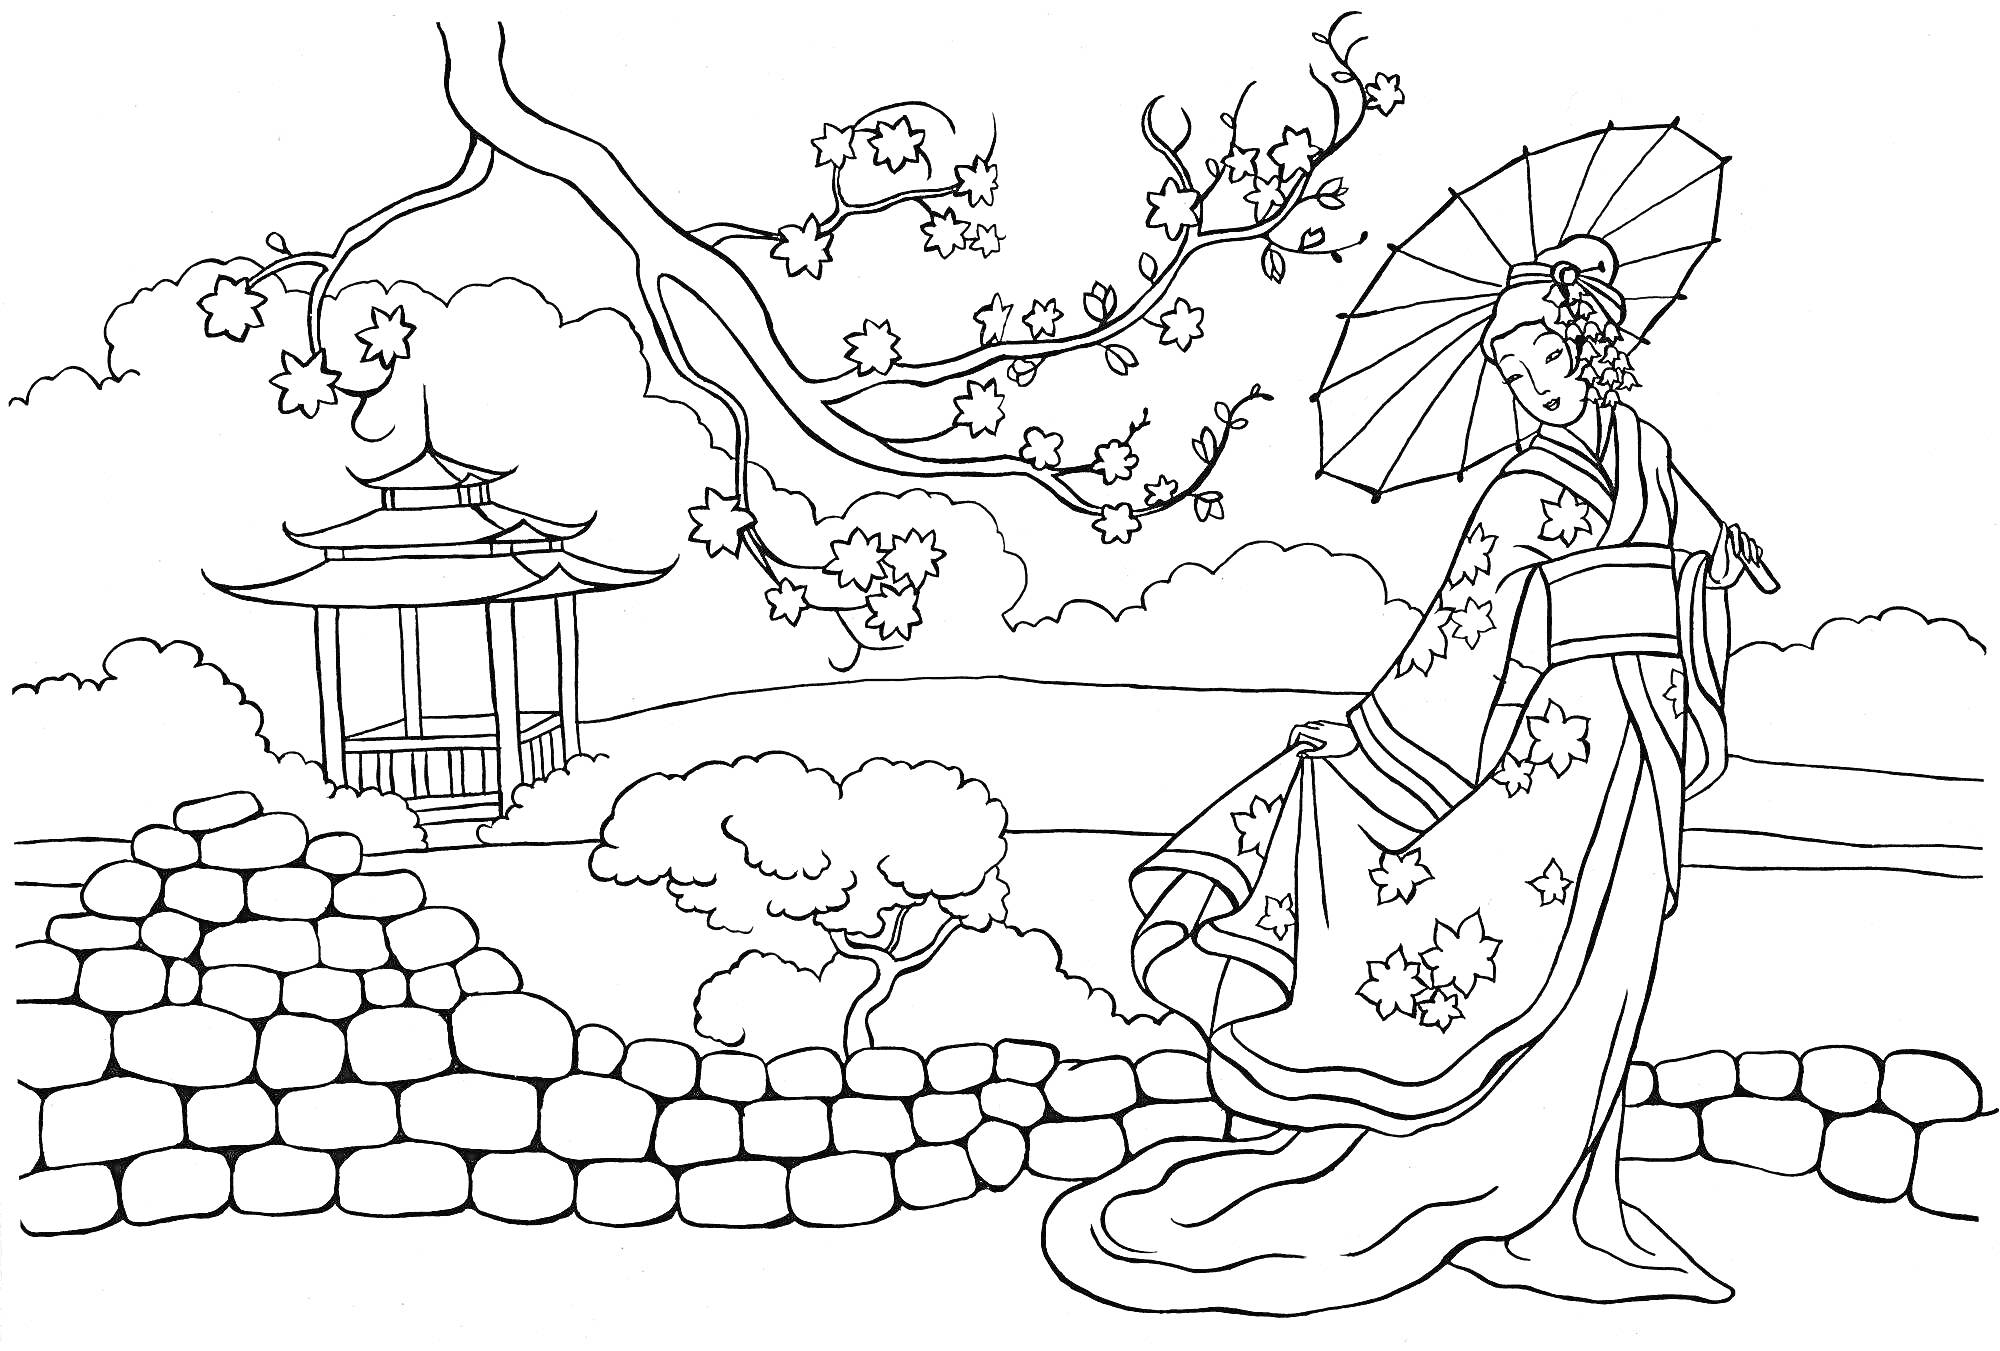 Женщина в традиционном китайском одеянии с зонтиком возле каменной стены и китайской пагоды на фоне сакуры